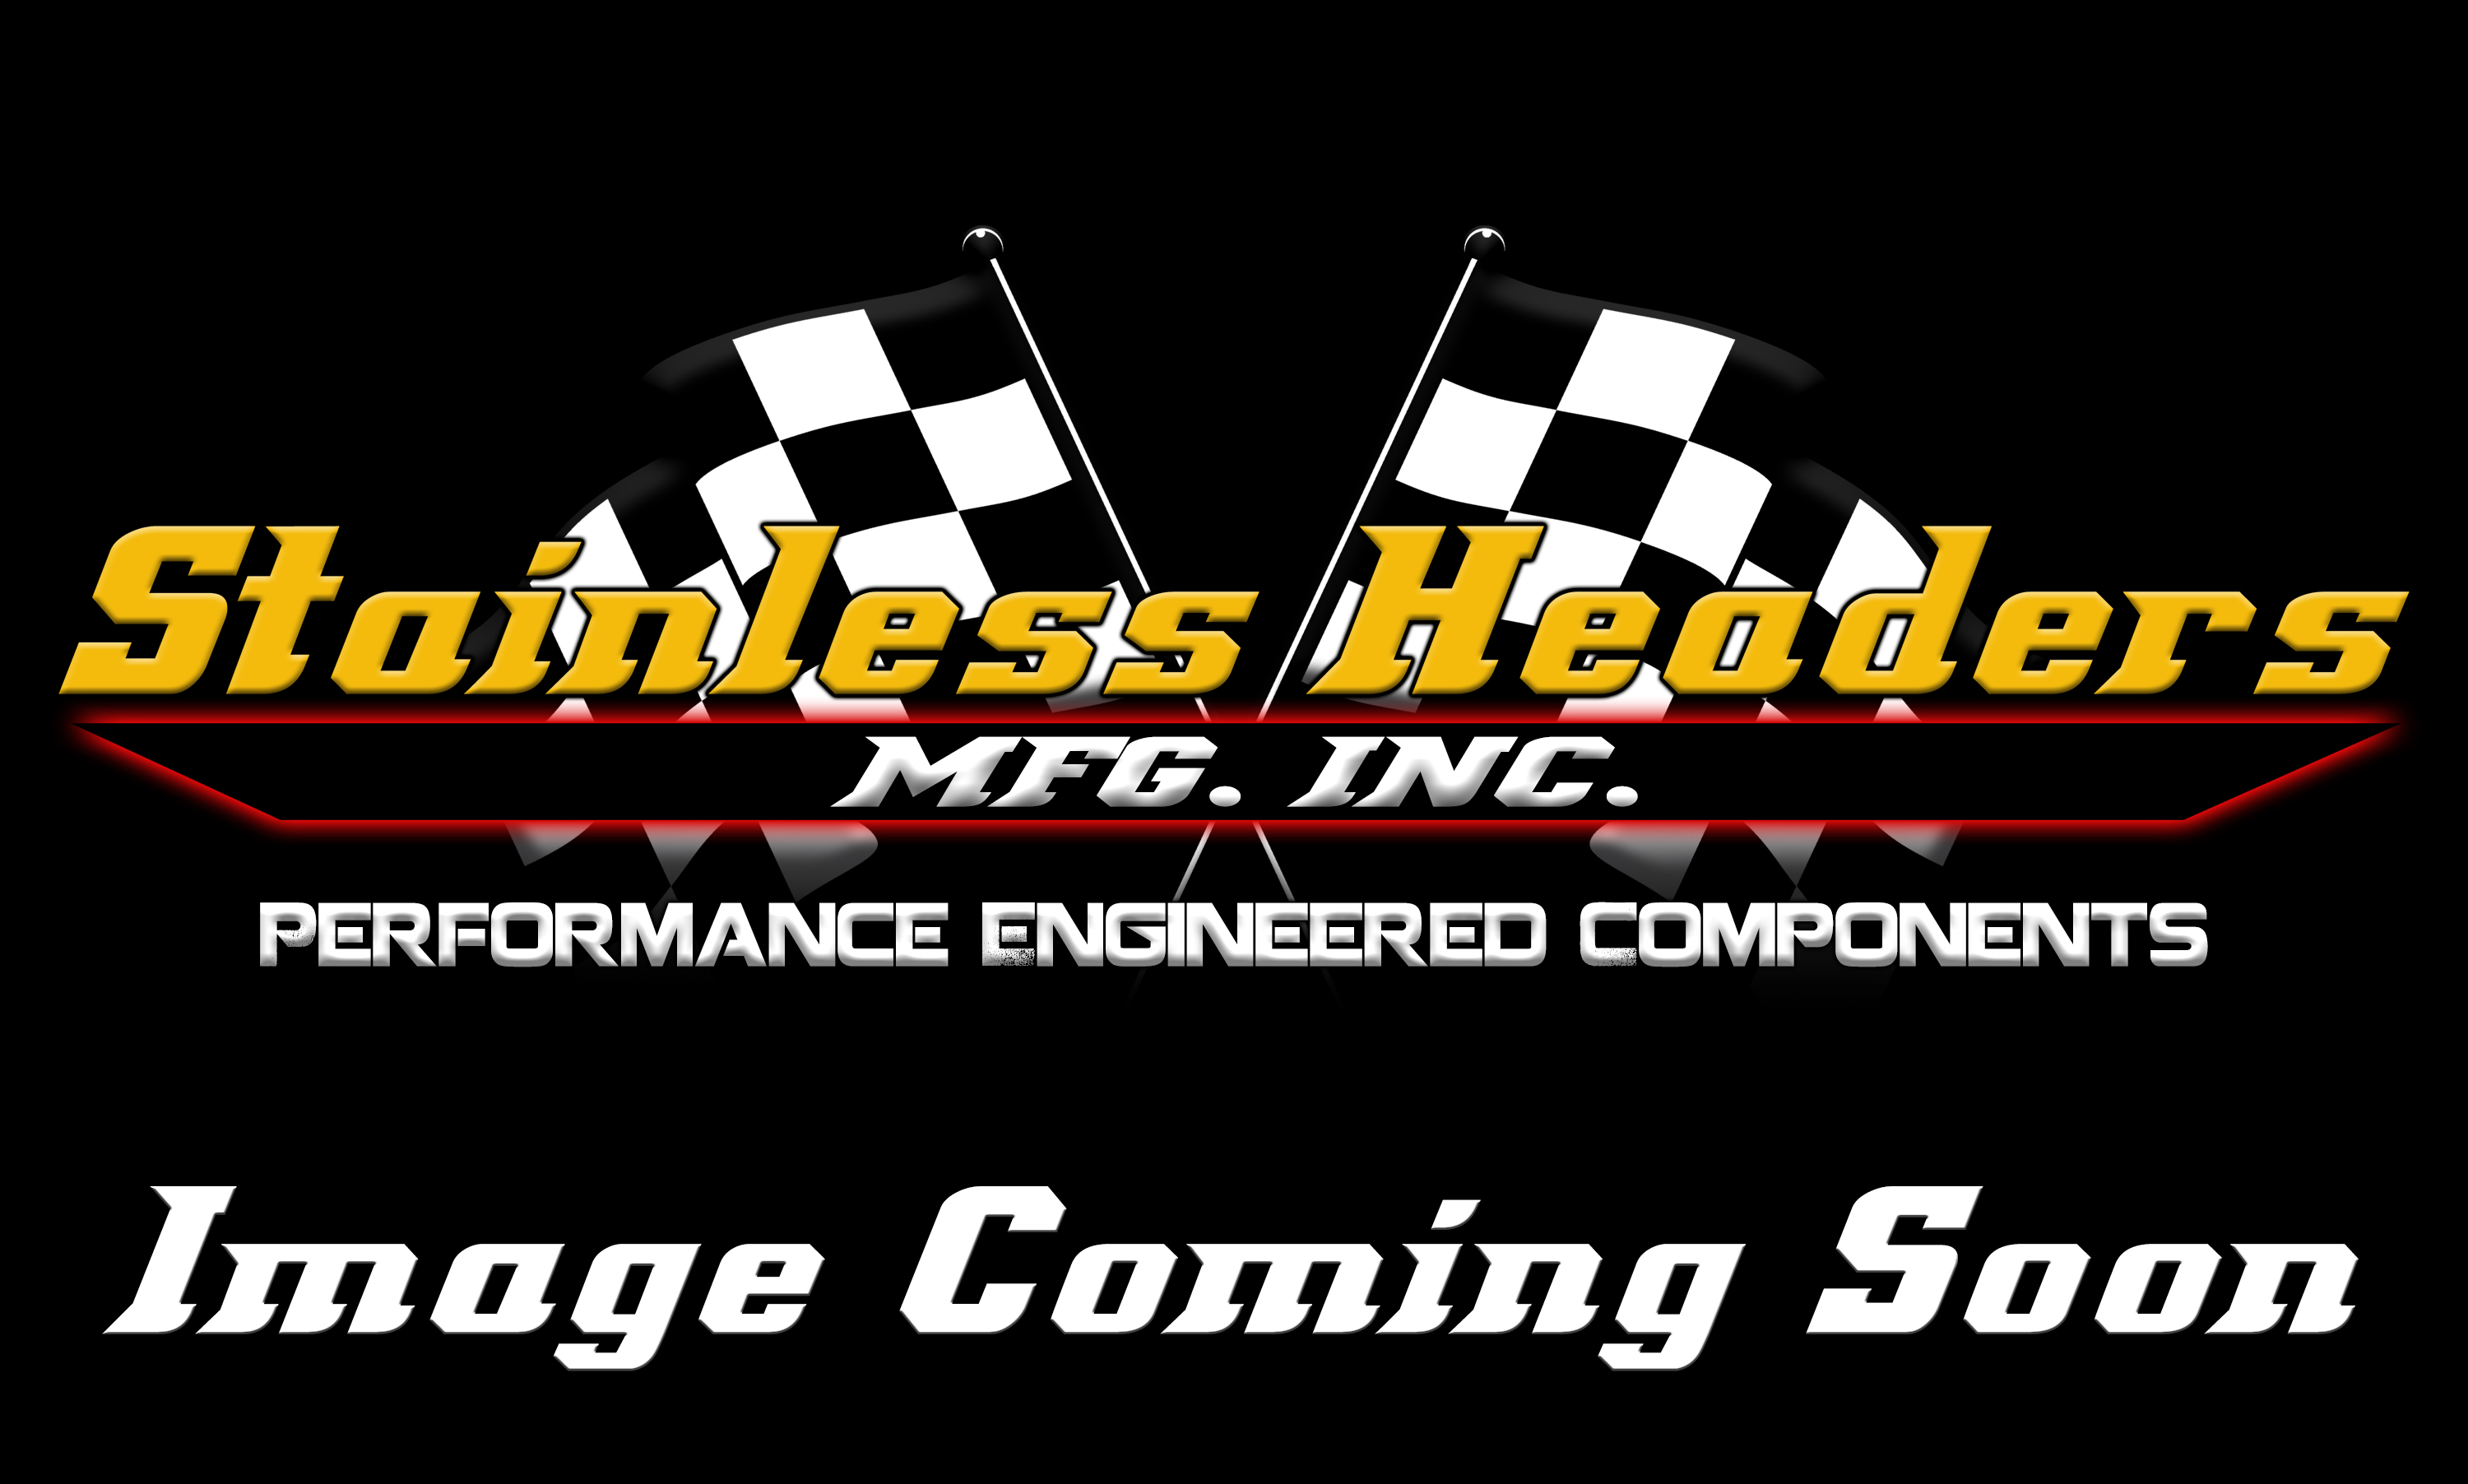 Mild Steel Header Flanges - Chevrolet Mild Steel Header Flanges - Stainless Headers - Big Block Chevy 5.0" Bore Spacing Mild Steel Header Flange